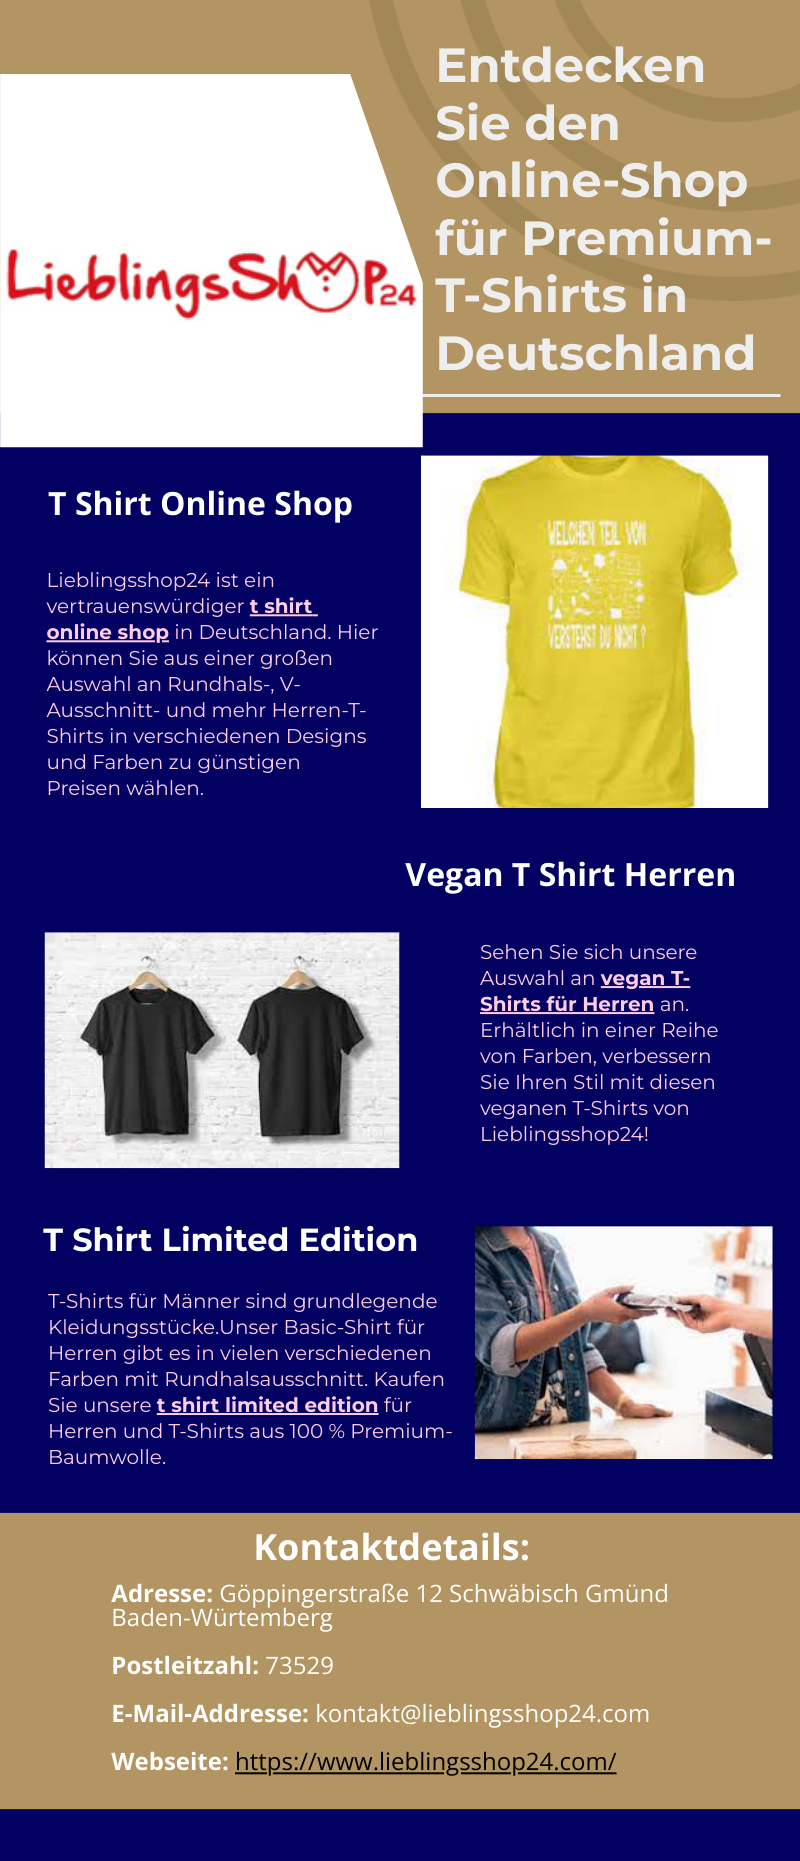 Entdecken Sie den Online-Shop für Premium-T-Shirts in Deutschland